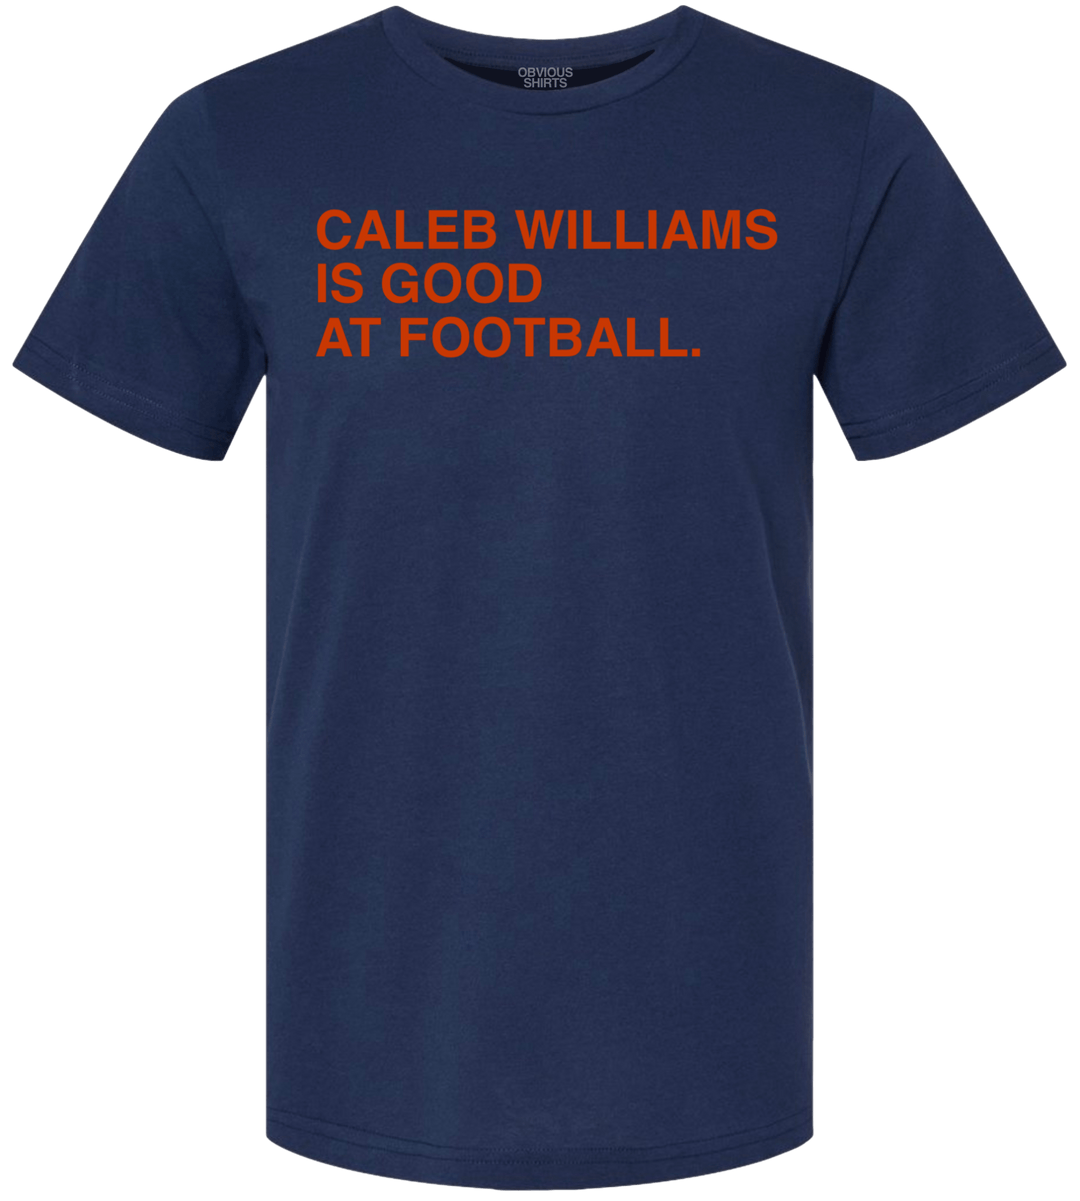 CALEB WILLIAMS IS GOOD AT FOOTBALL. - OBVIOUS SHIRTS